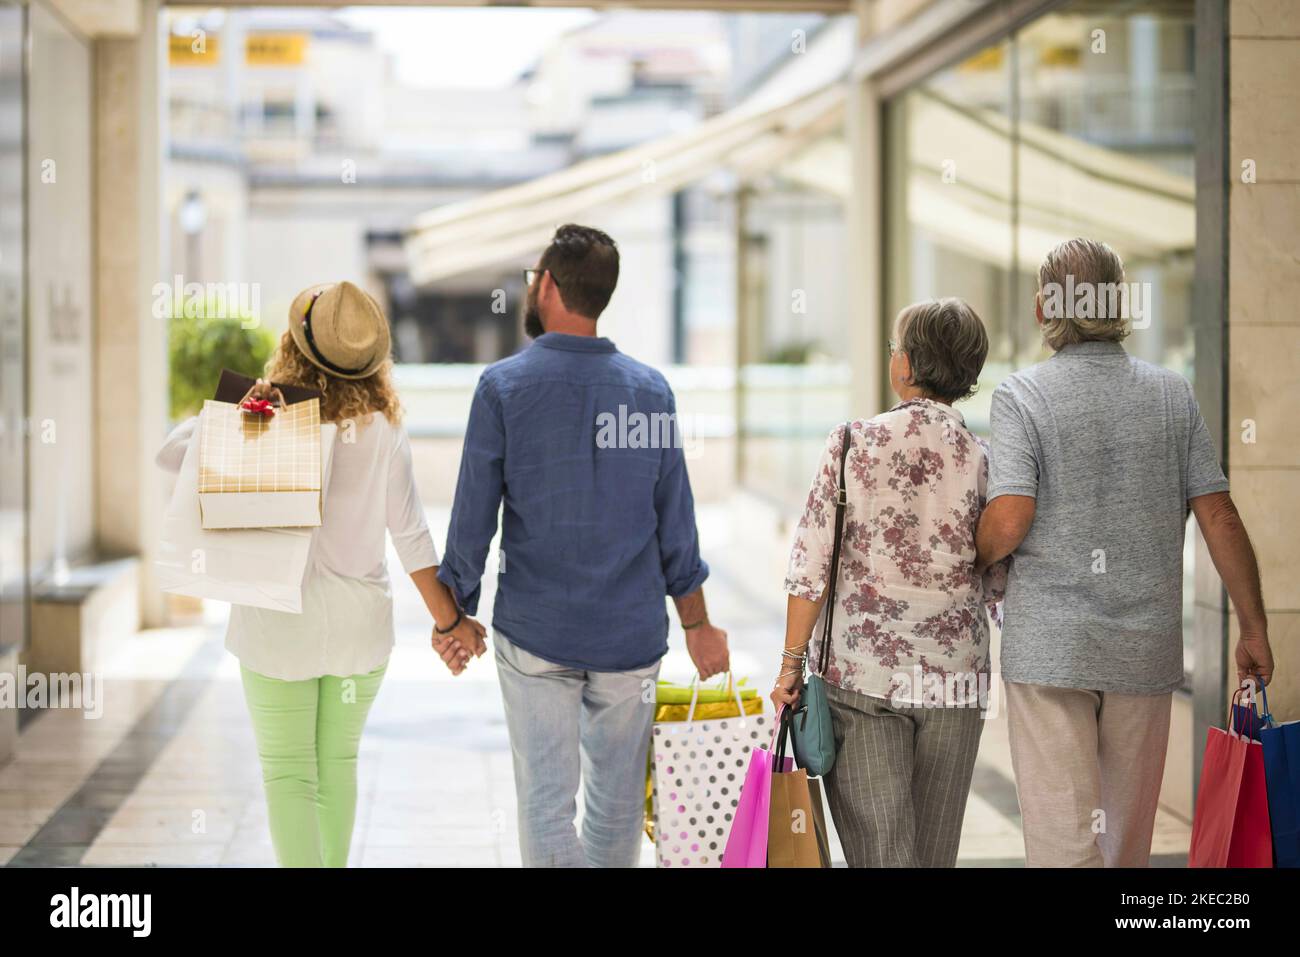 Gruppe oder Familie, die zusammen in einem Einkaufszentrum einkaufen gehen Und halten Einkaufstaschen - Erwachsene und Senioren schauen Die Geschäfte oder Geschäfte Stockfoto